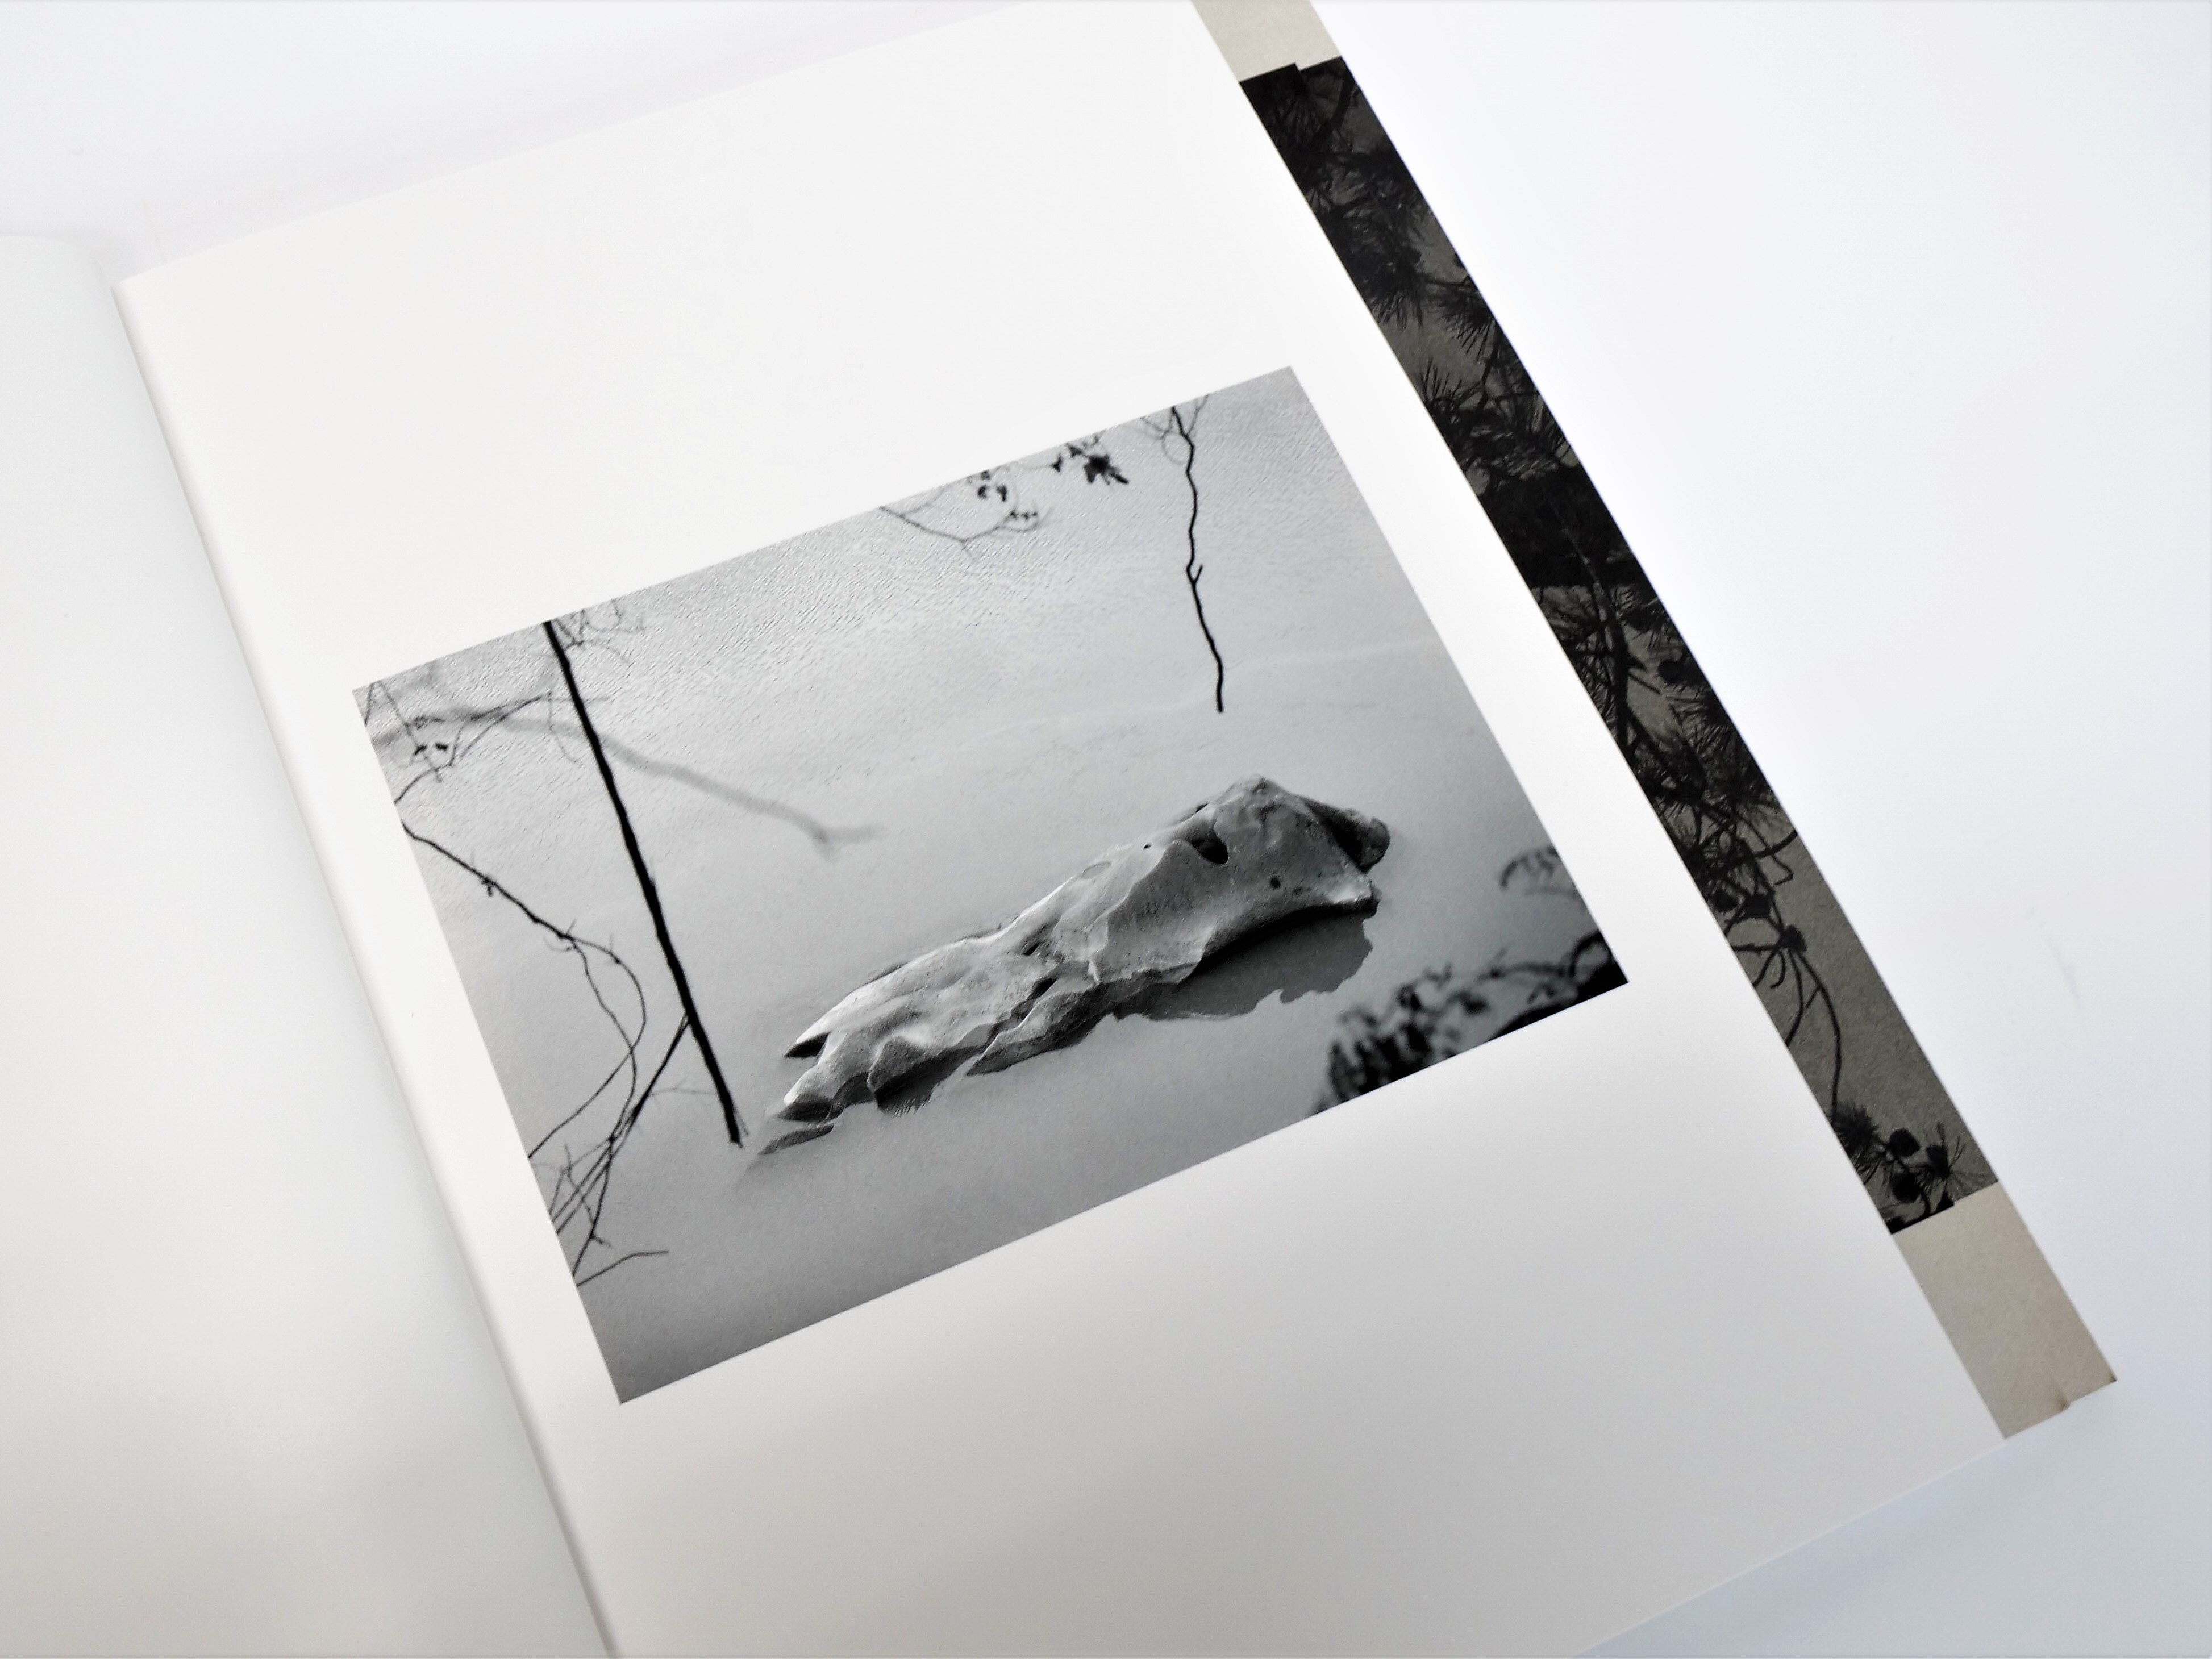 印刷ニスの工夫と特殊製本により、万物の移り変わりを表現した写真集 